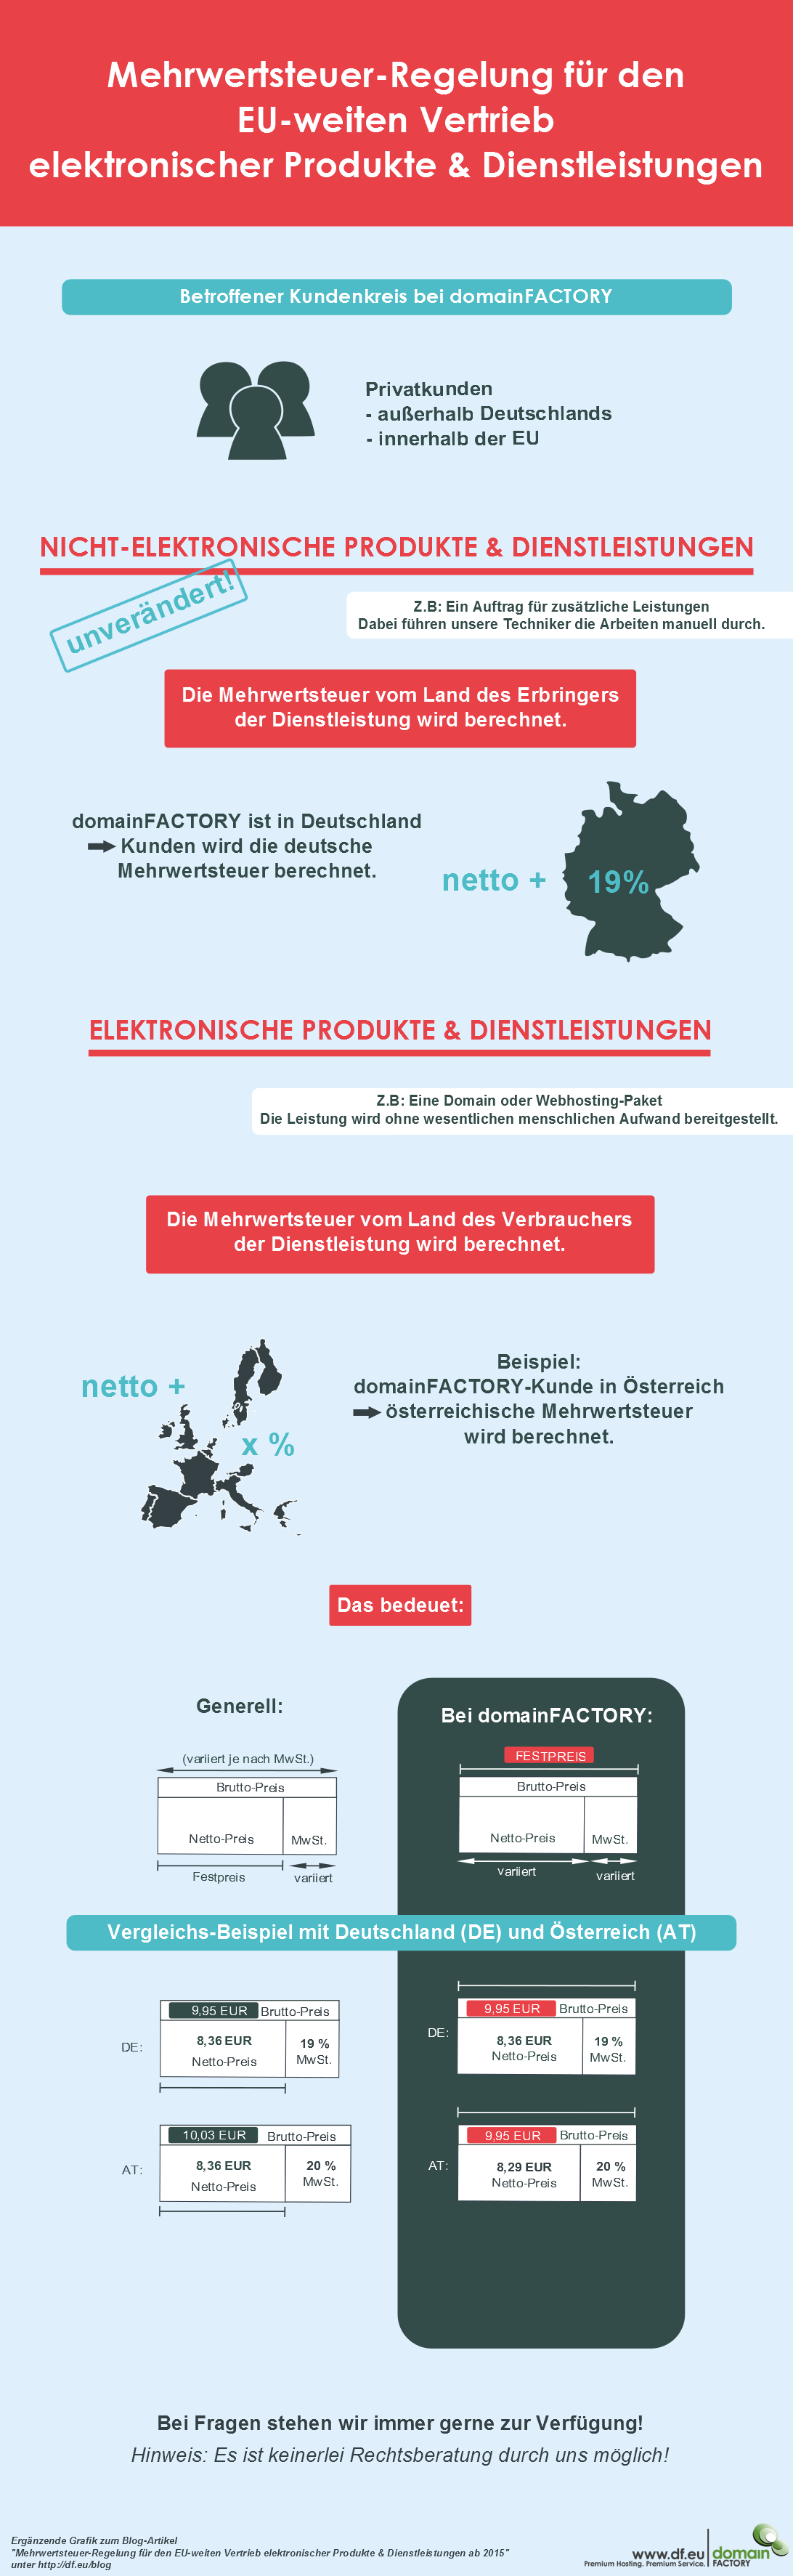 Infografik: Mehrwertsteuer-Regelung für den EU-weiten Vertrieb elektronischer Produkte & Dienstleistungen 